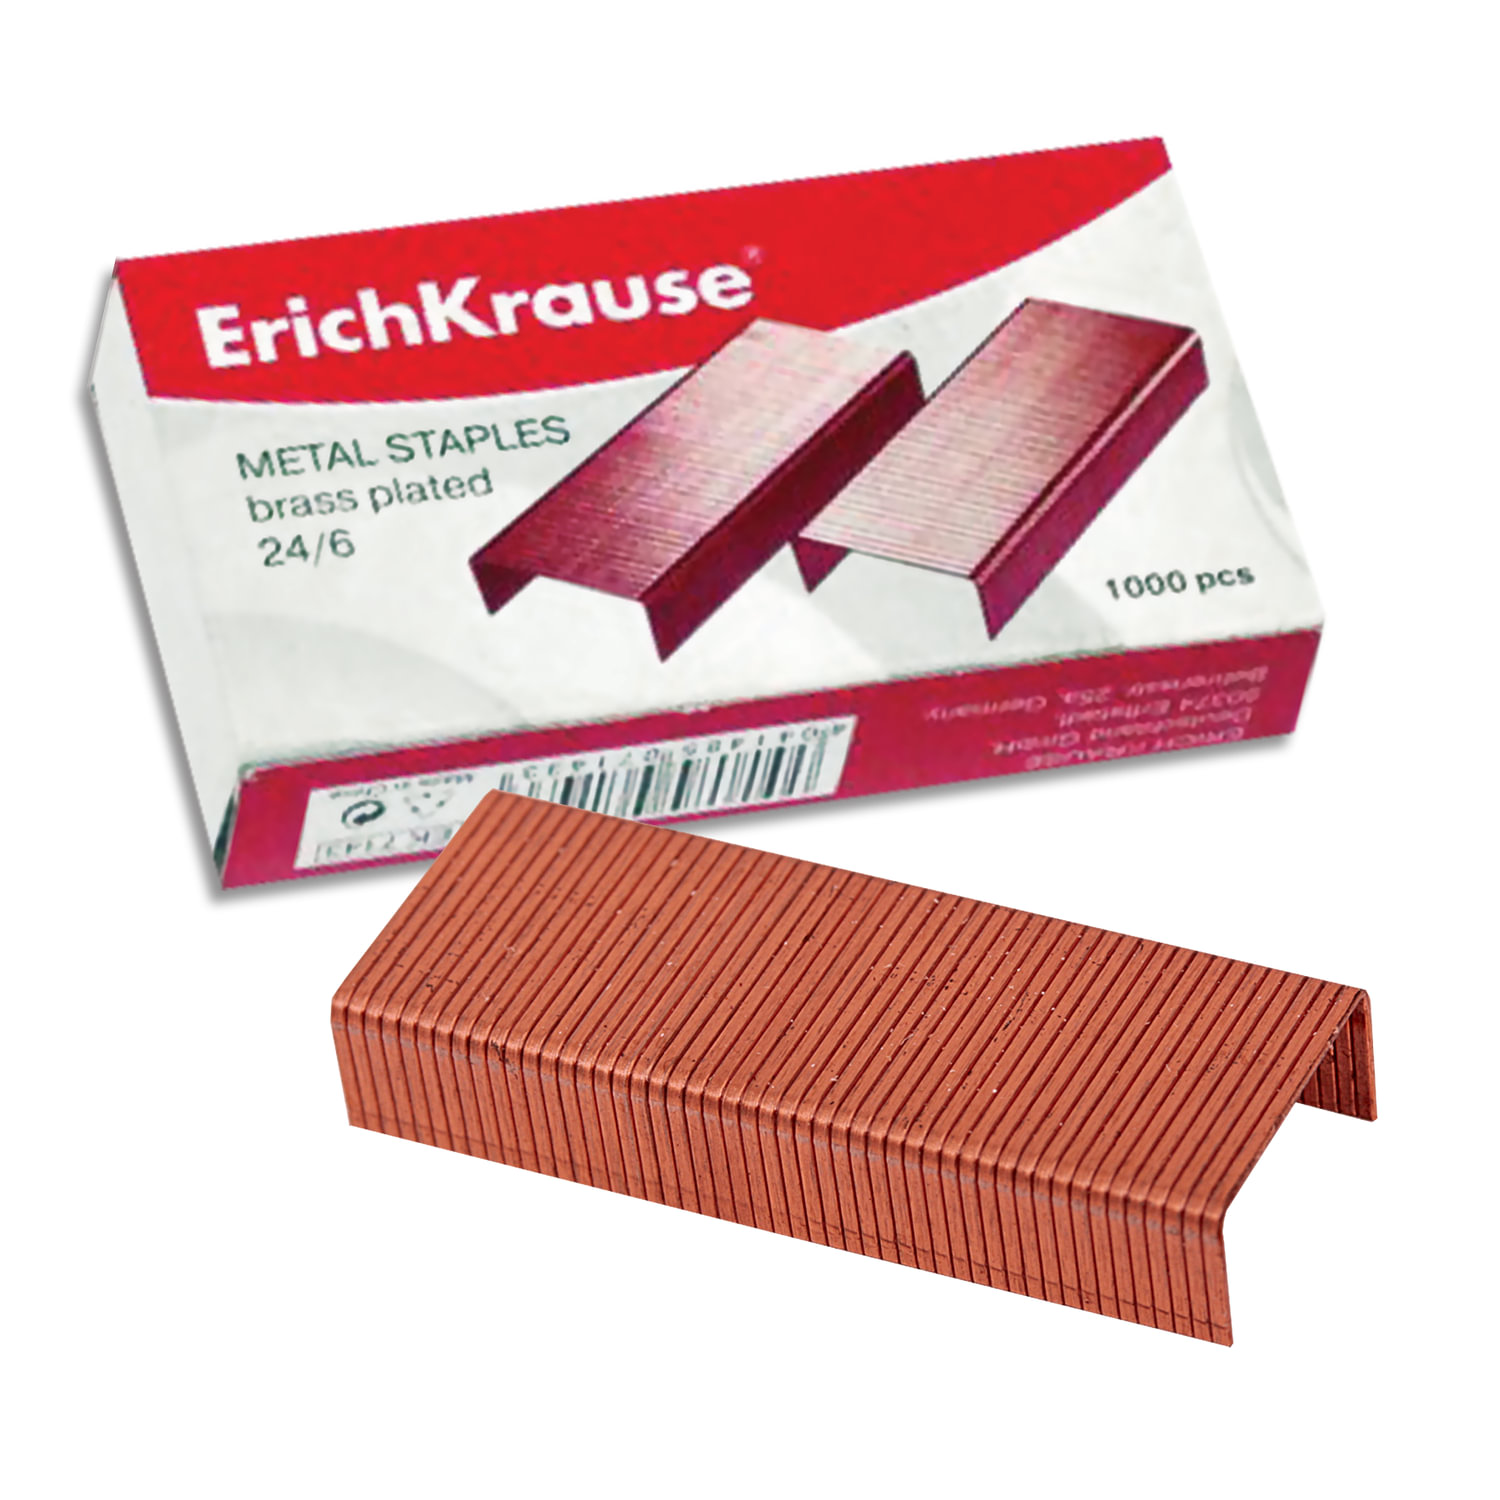 фото Скобы для степлера ERICH KRAUSE № 24/6, 1000 штук, в картонной коробке, медное покрытие, до 20 листов Erichkrause